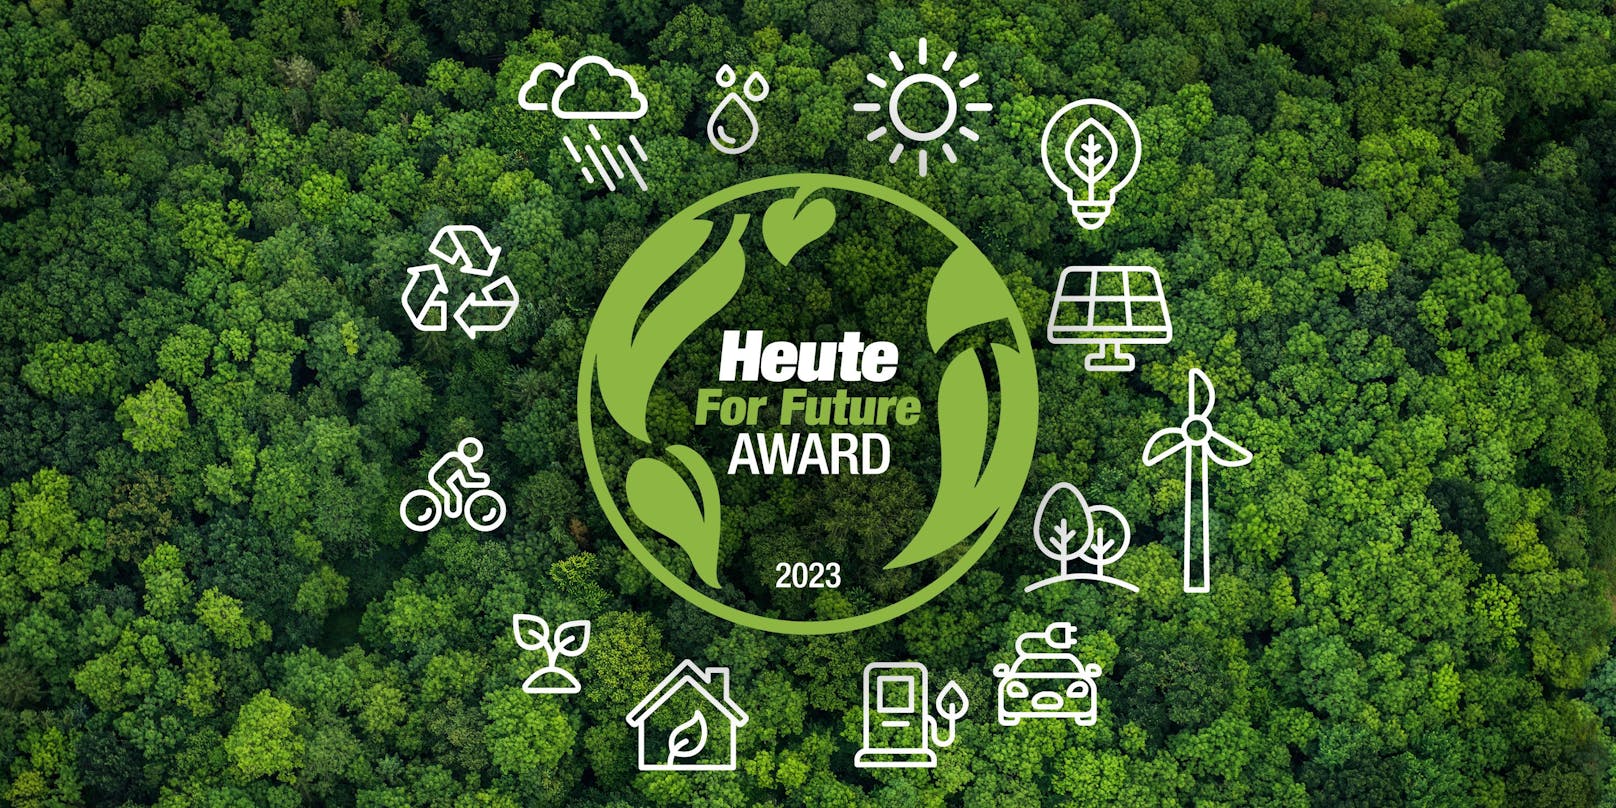 Heute For Future-Award: Die Tageszeitung <em>"Heute"</em> prämiert auch dieses Jahr die besten Klimaschutzprojekte.